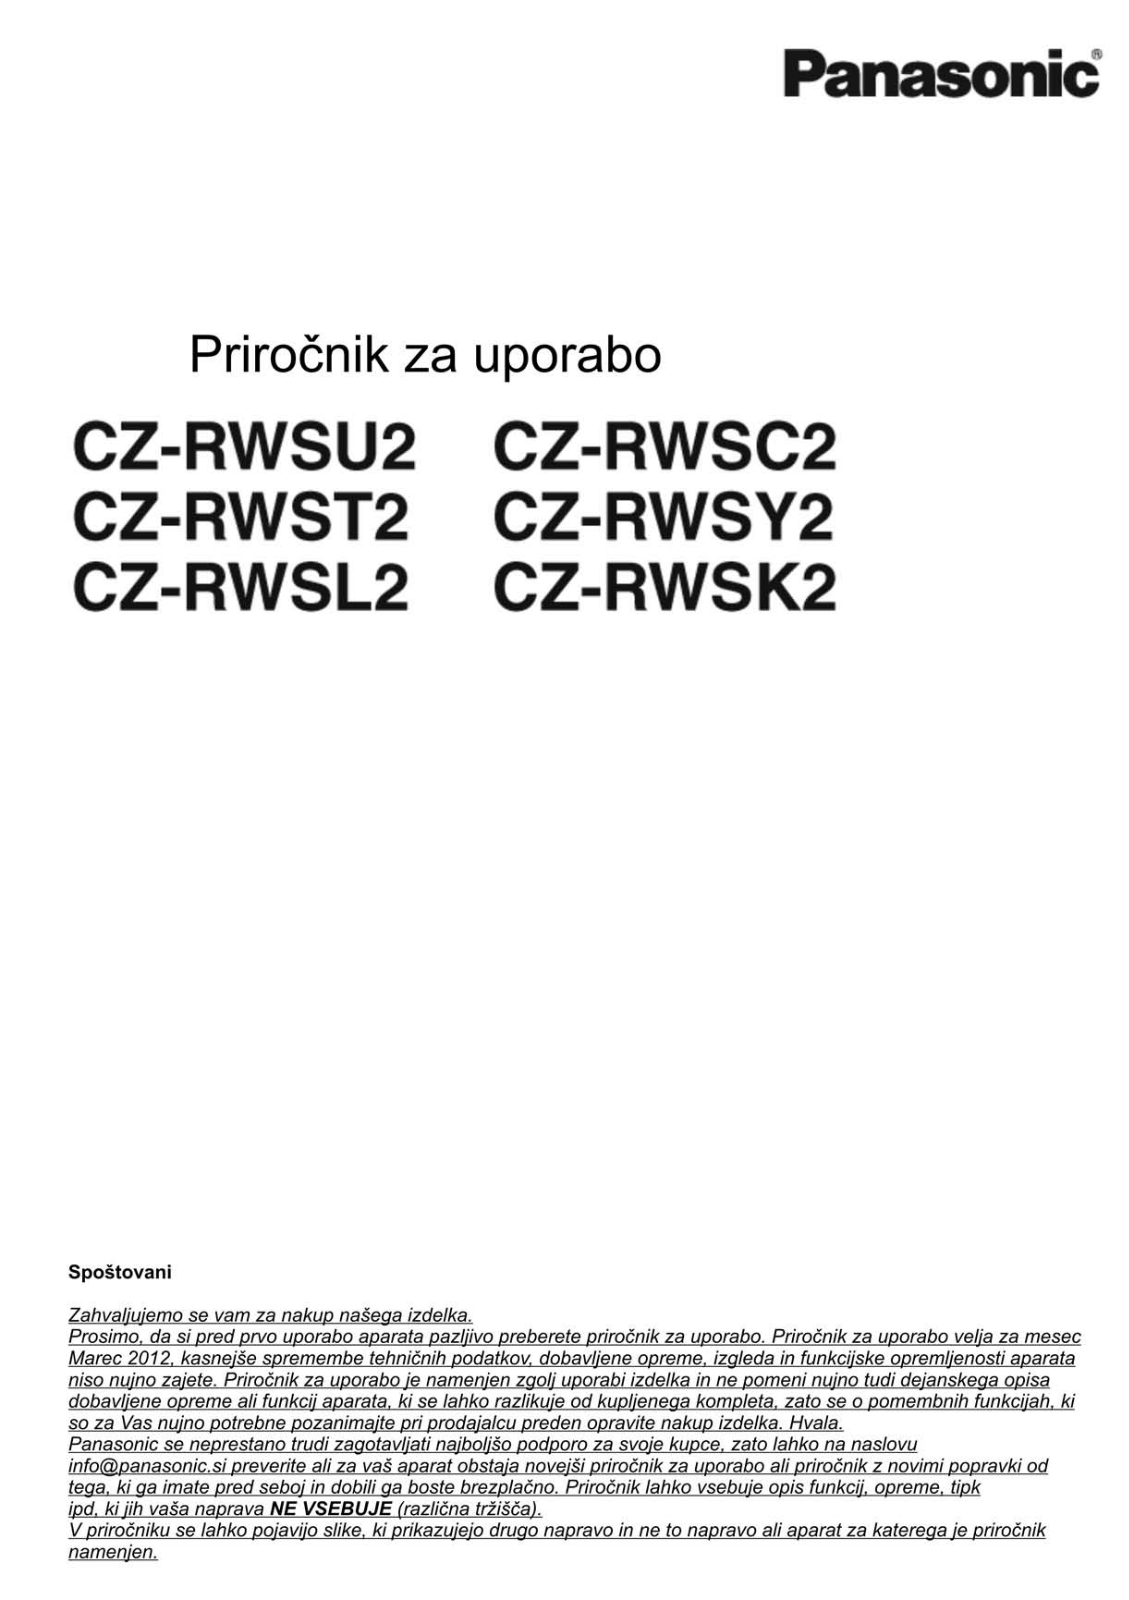 Panasonic CZ-RWSL2, CZ-RWSU2, CZ-RWSC2, CZ-RWSK2, CZ-RWSY2 User Manual